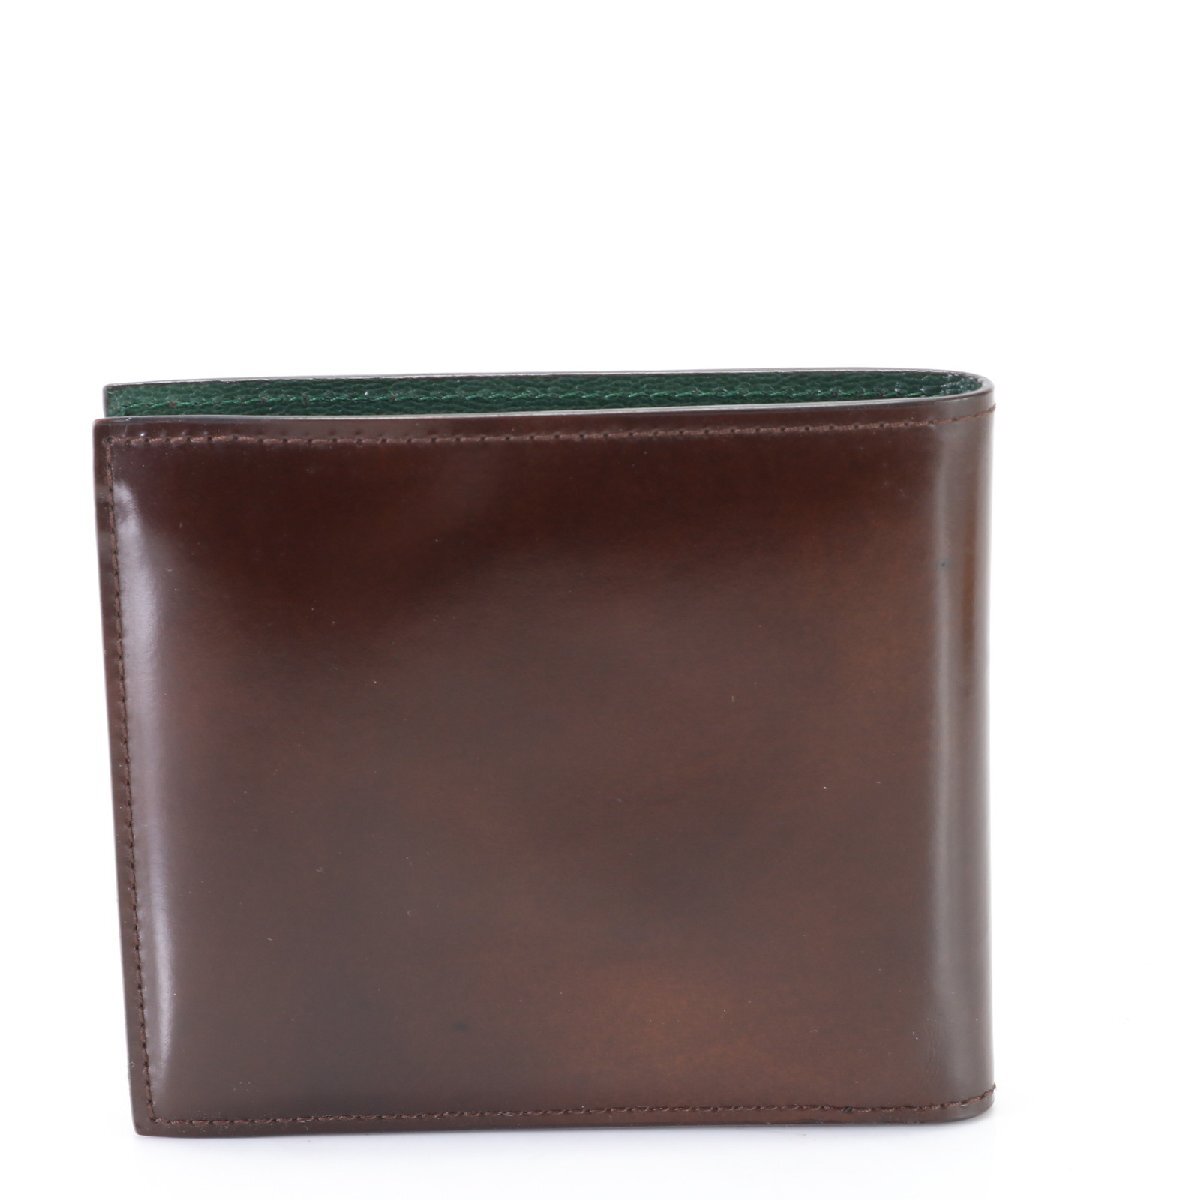 1 иен # прекрасный товар # Dunhill #AB110 кожа двойной бумажник compact бумажник натуральная кожа Brown чай цвет джентльмен мужской EHM K26-4